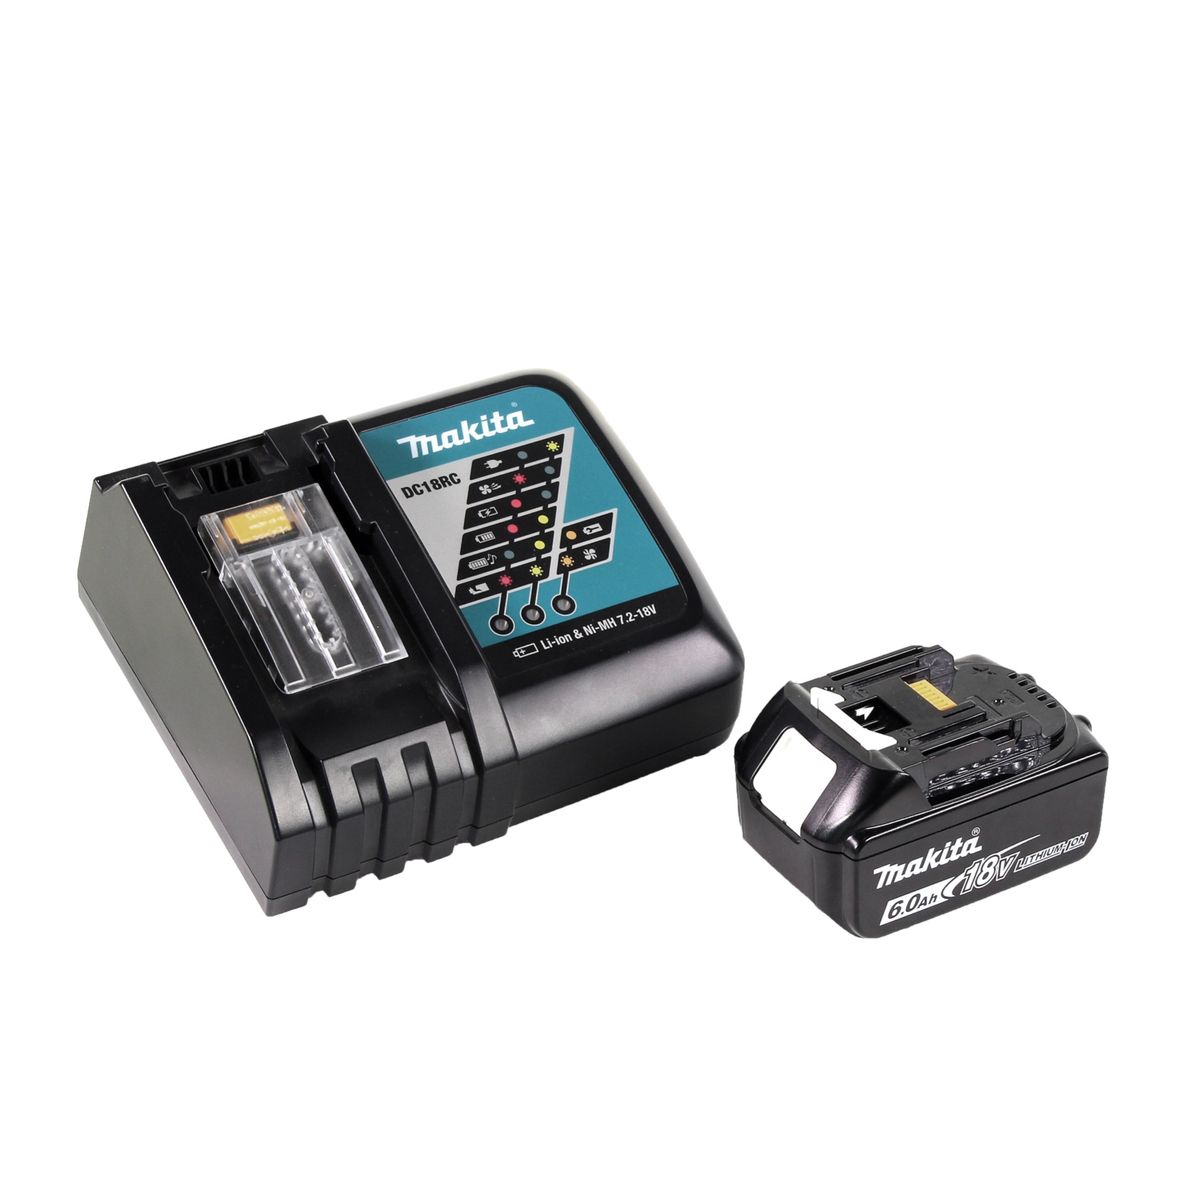 Makita DCL 180 RG1 B Aspirateur sans fil 18 V - noir + 1x Batterie 6,0 Ah + Chargeur